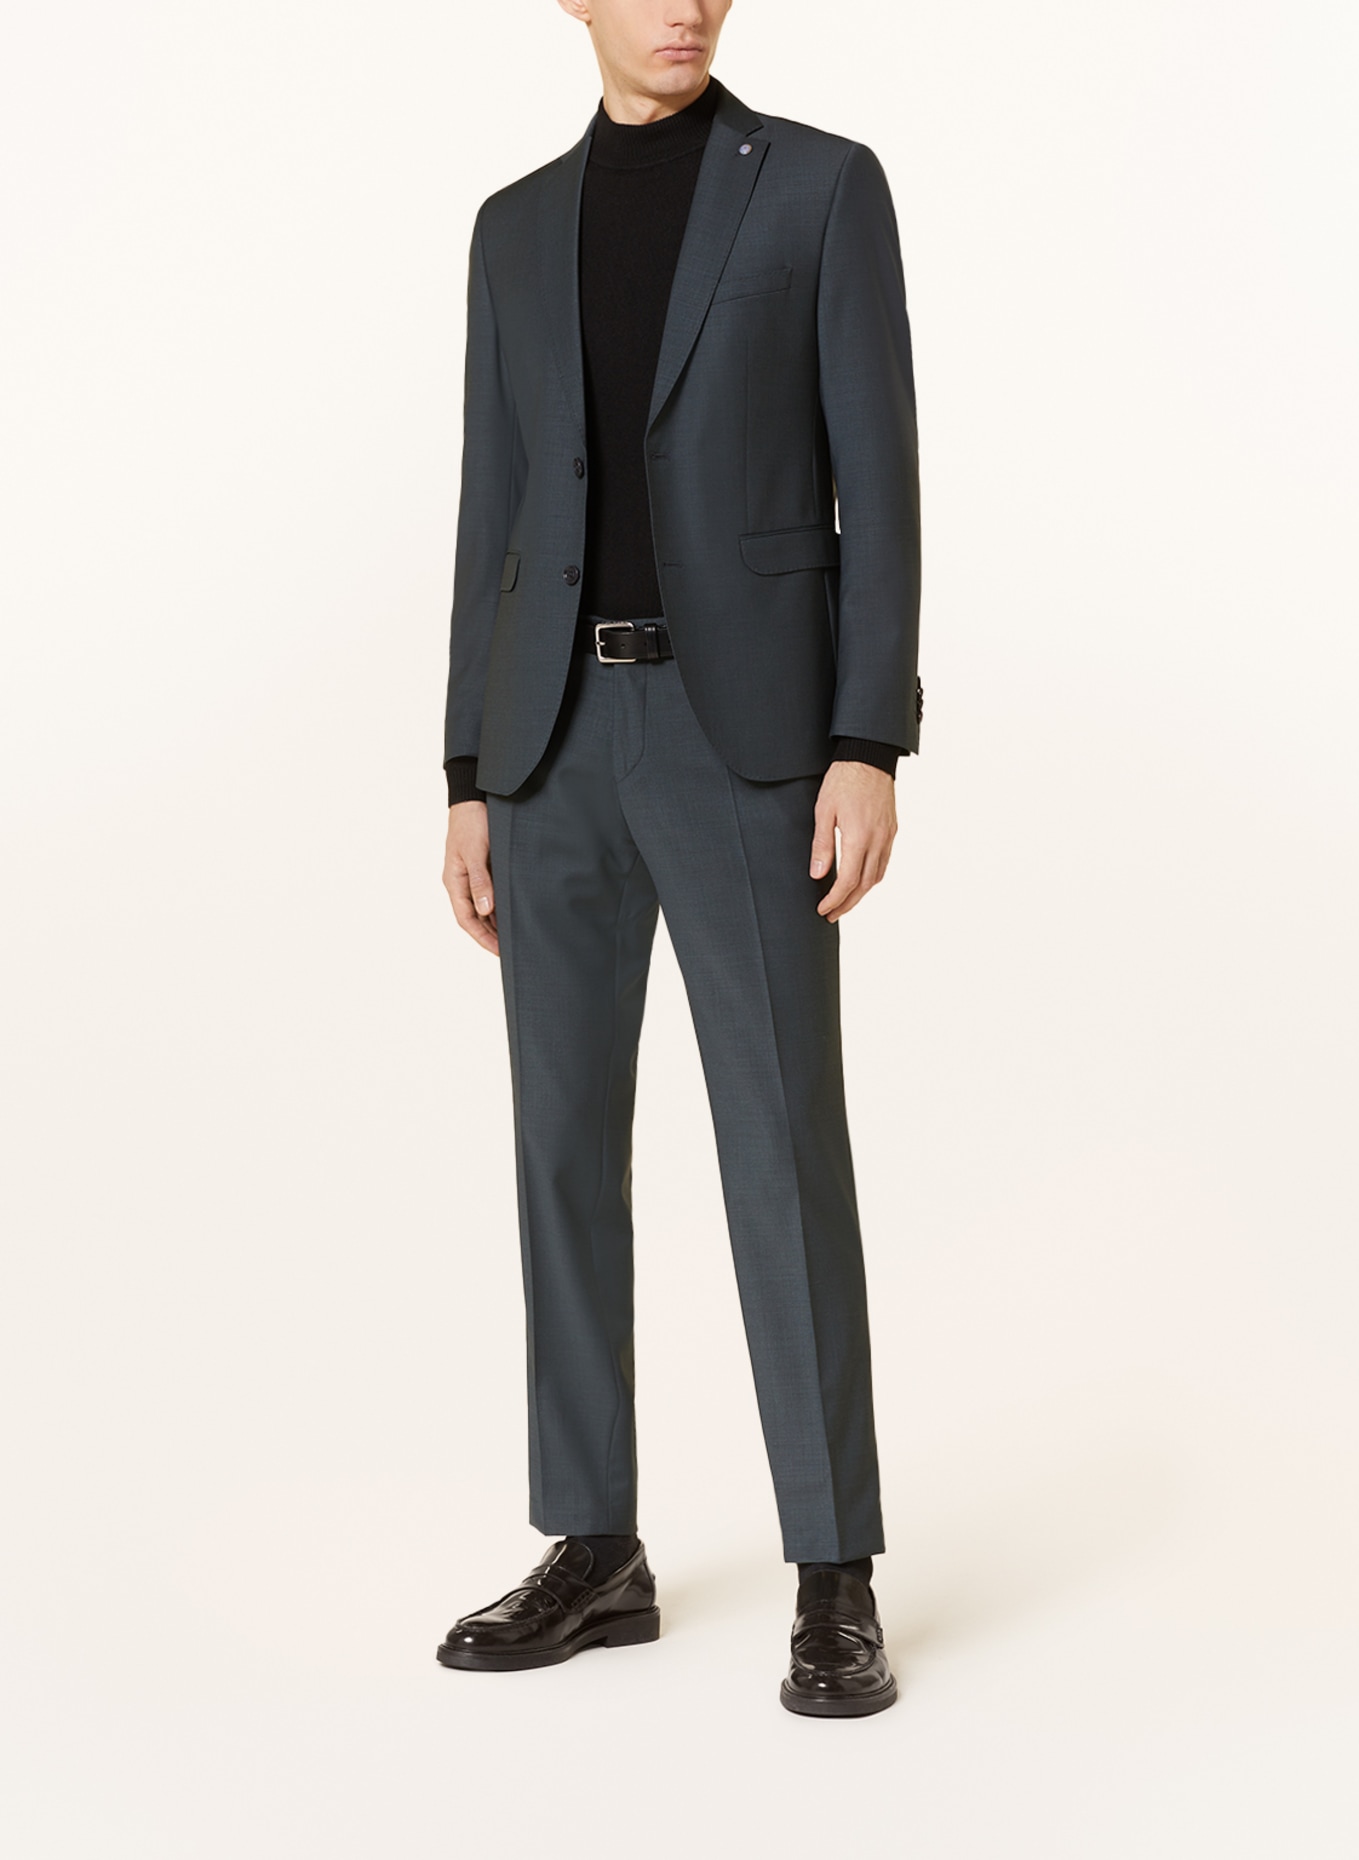 CG - CLUB of GENTS Suit trousers COLE slim fit, Color: 53 gruen dunkel (Image 2)